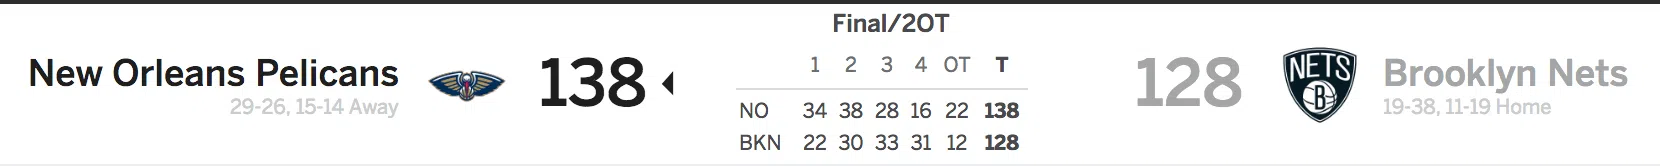 Brooklyn Nets vs New Orleans Pelican 2-10-18 Score